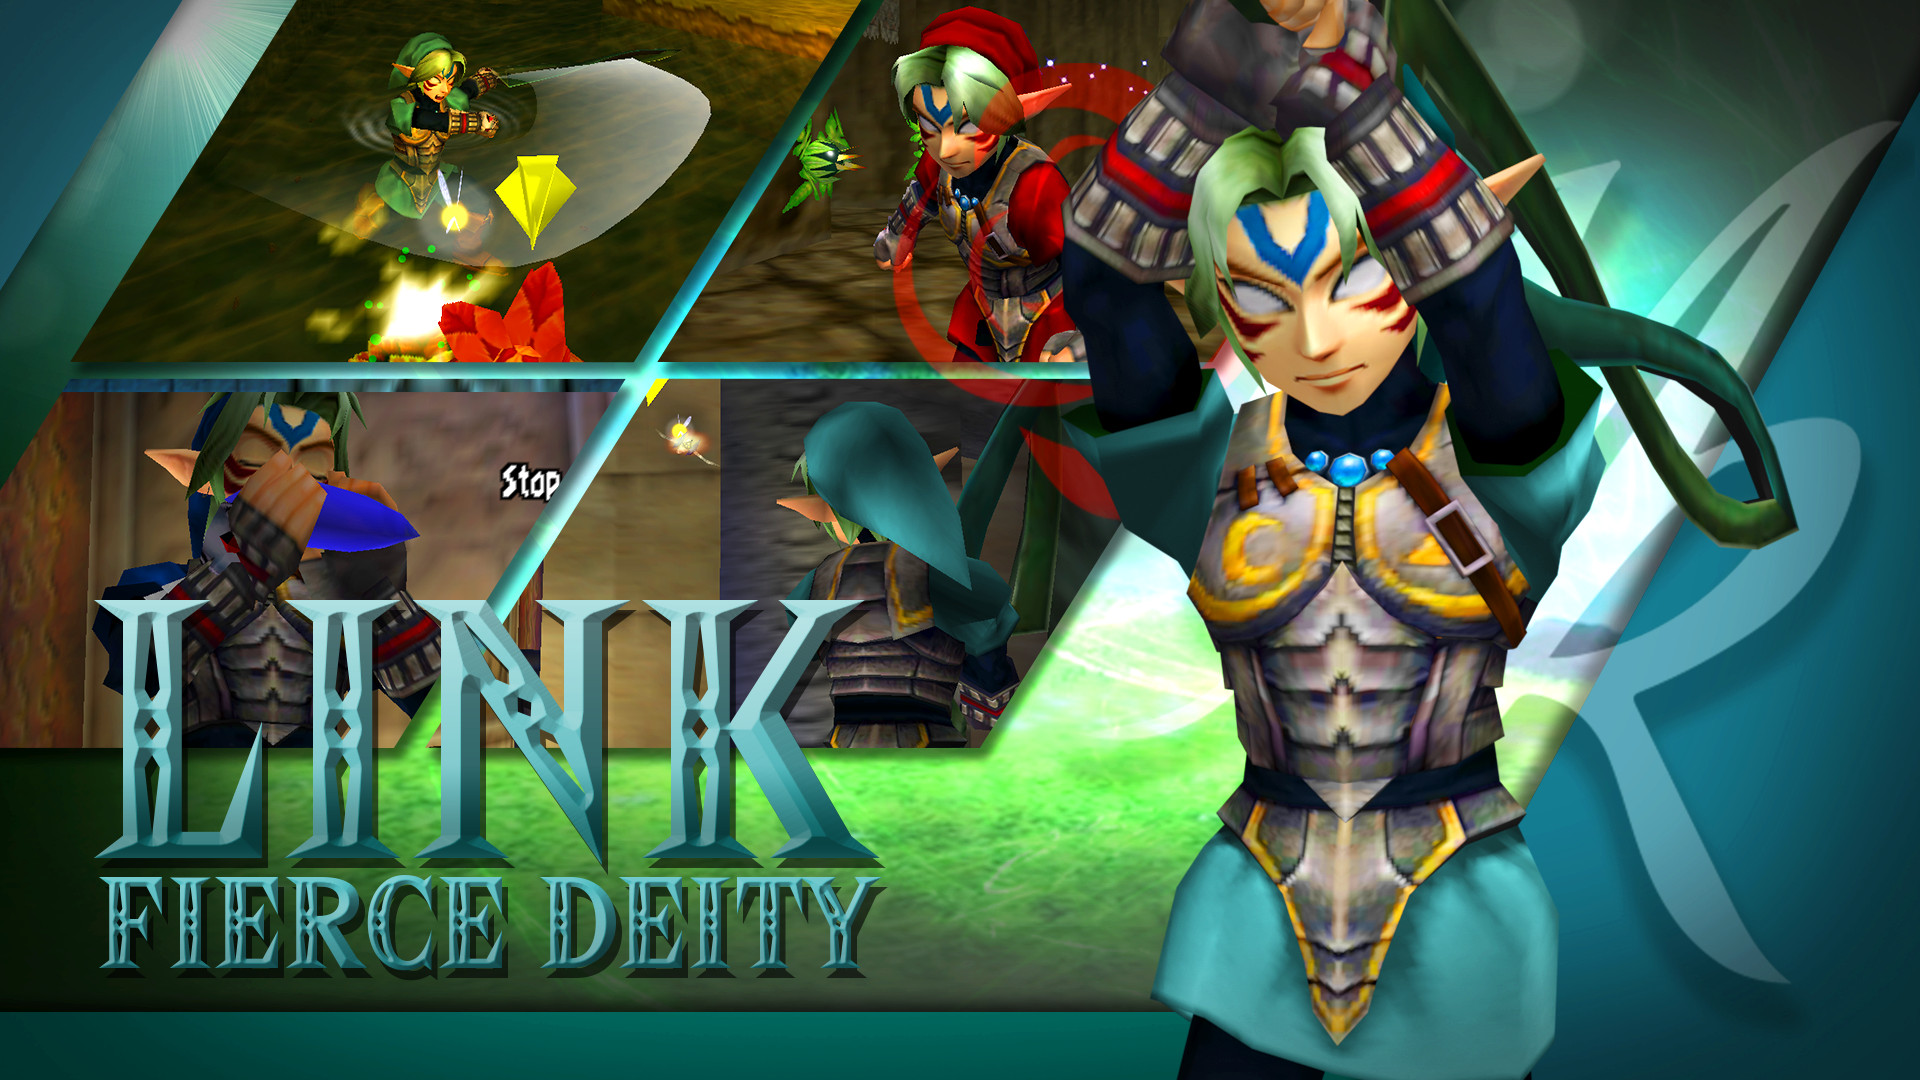 How powerful is Fierce Deity Link?